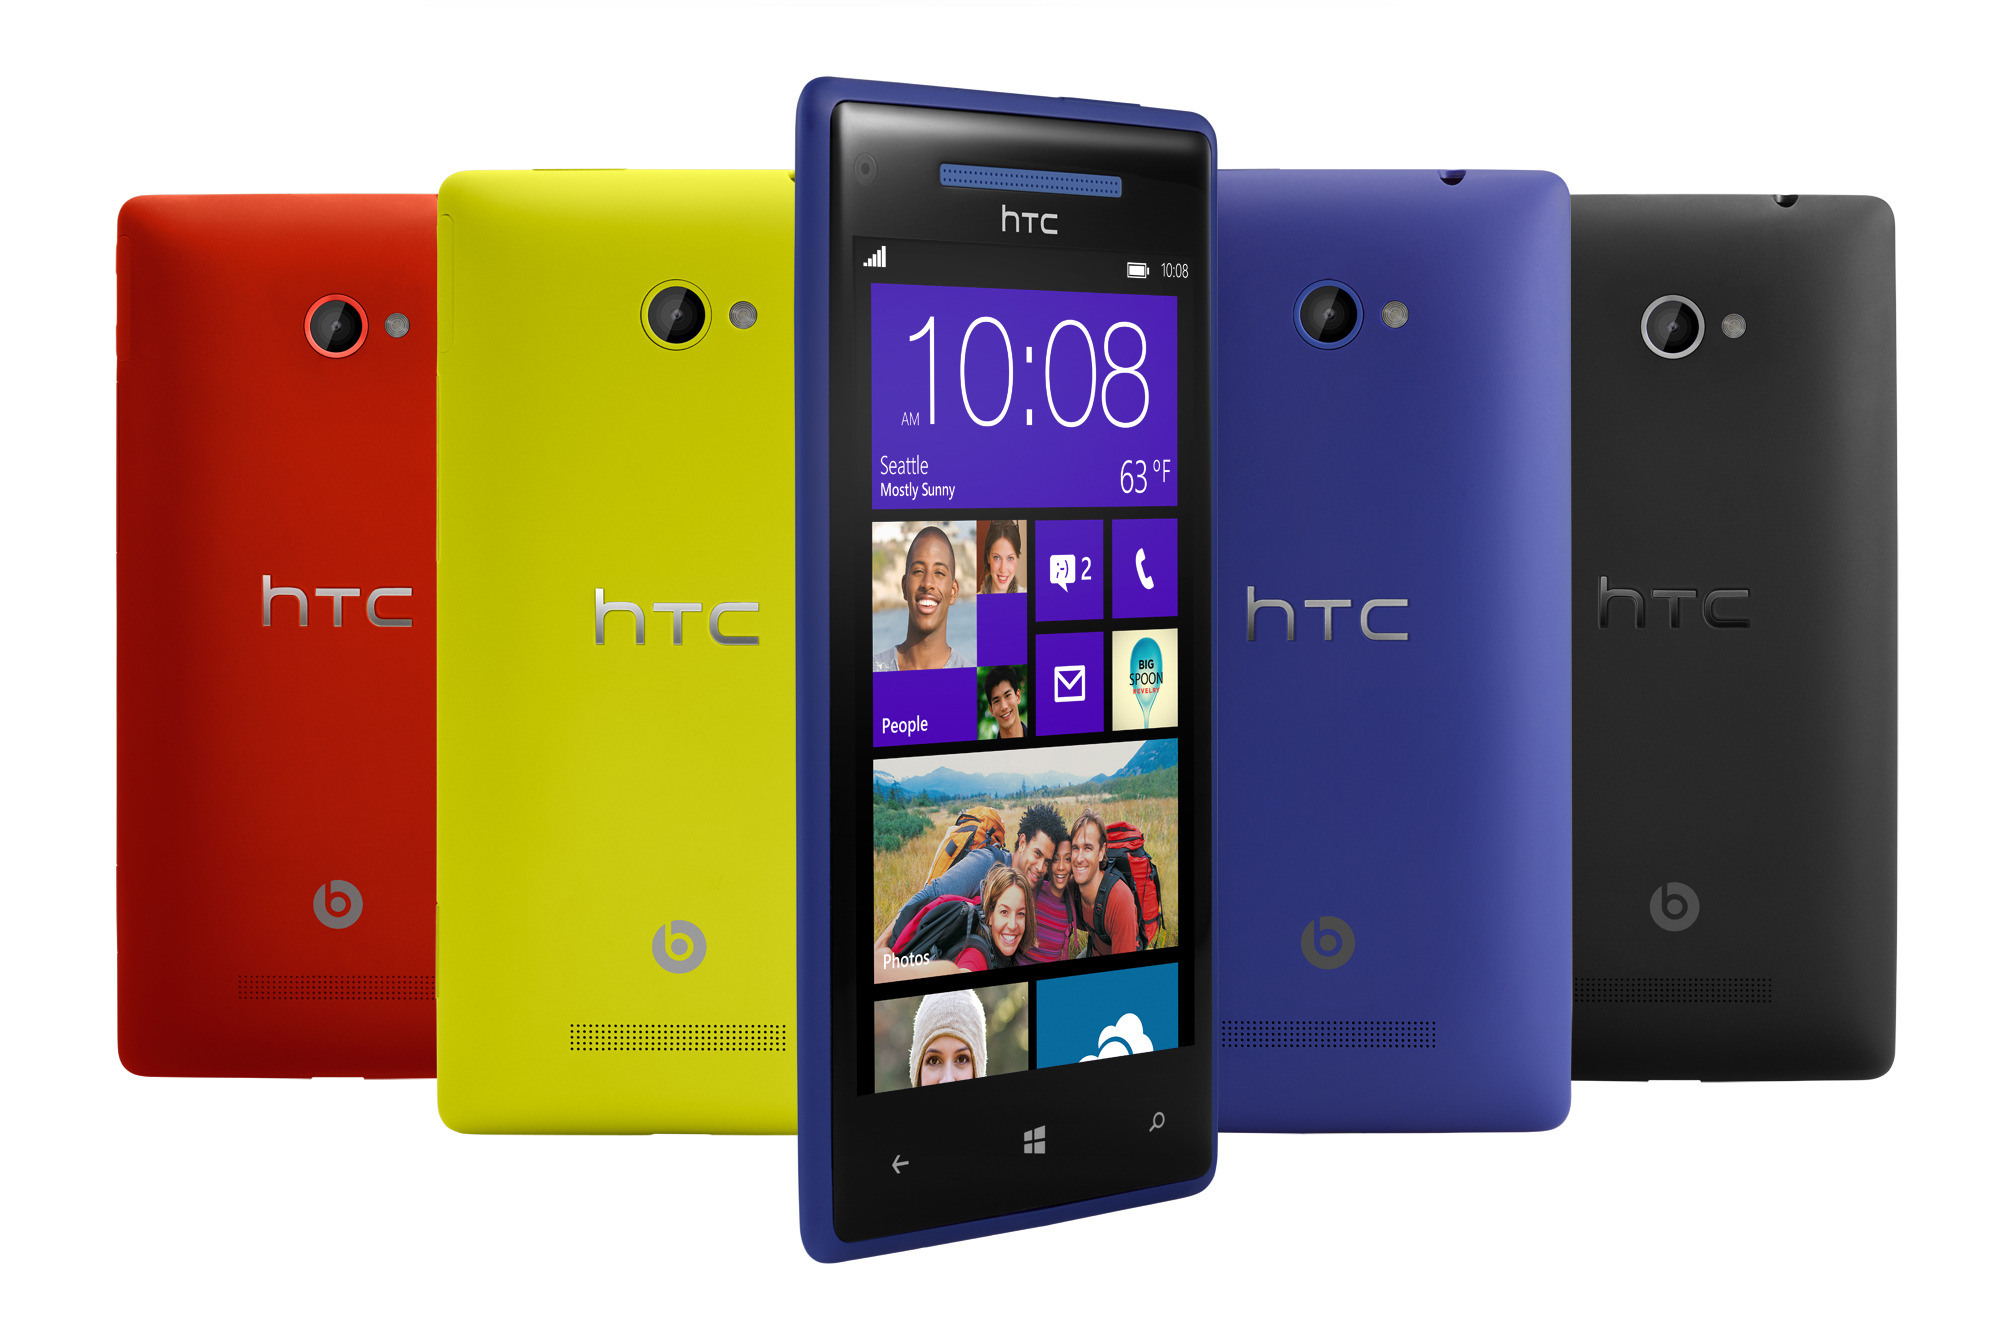 HTC con Windows Phone - HTC con Windows Phone - HTC con Windows Phone - HTC con Windows Phone - HTC con Windows Phone - HTC con Windows Phone